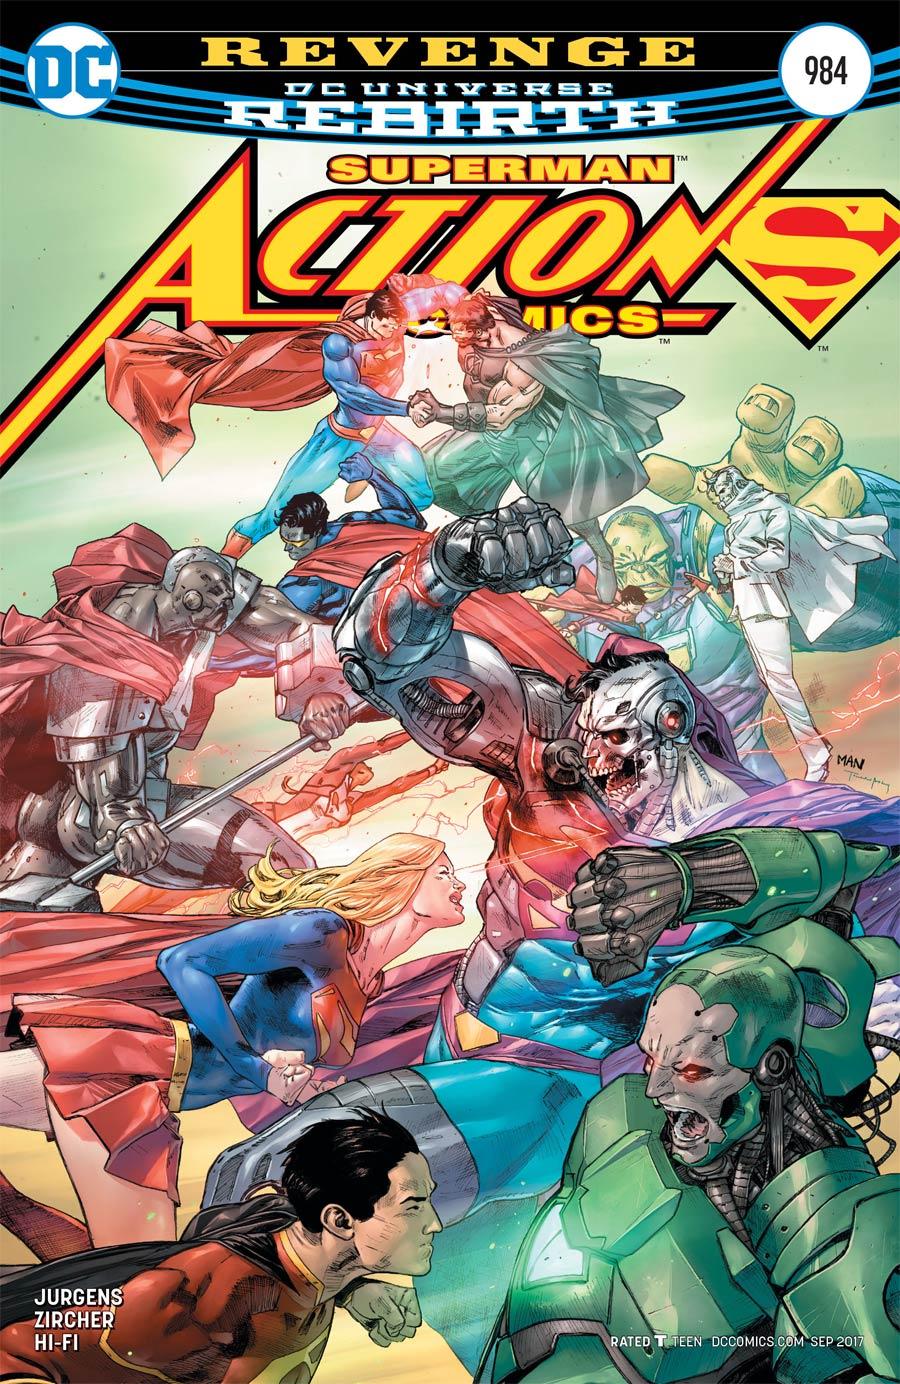 Action Comics Vol. 2 #984